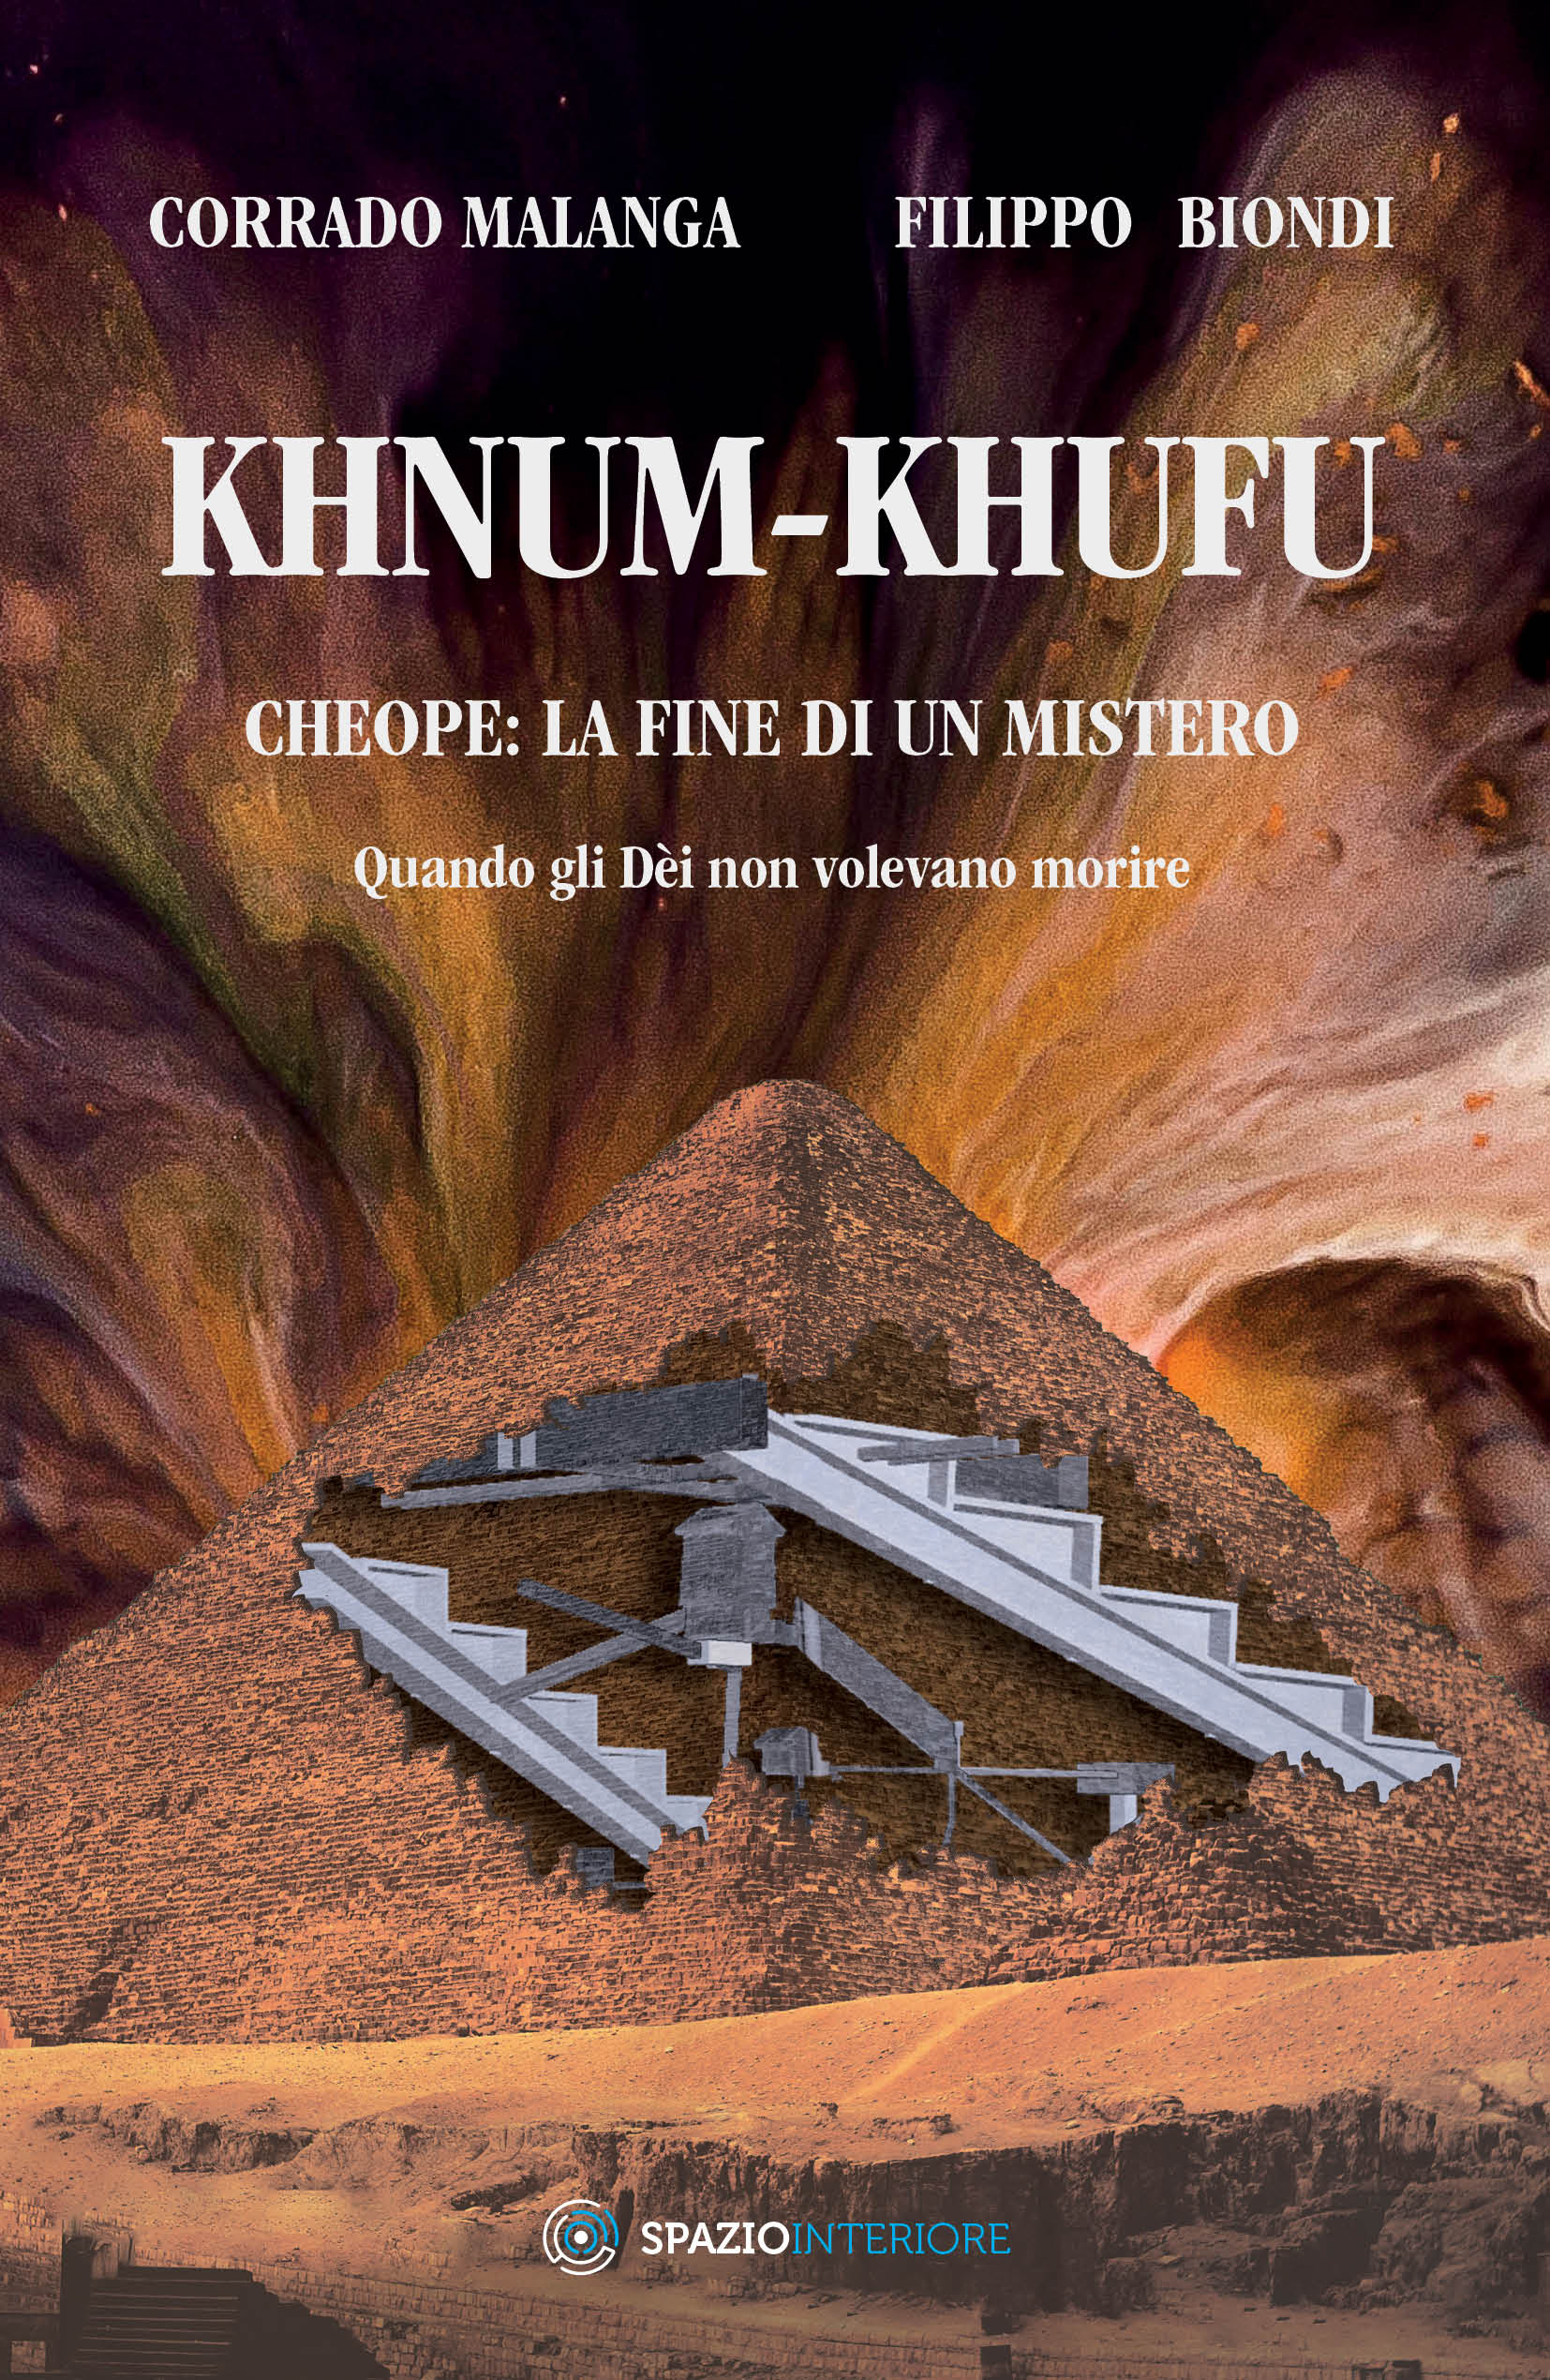 Khnum-Khufu